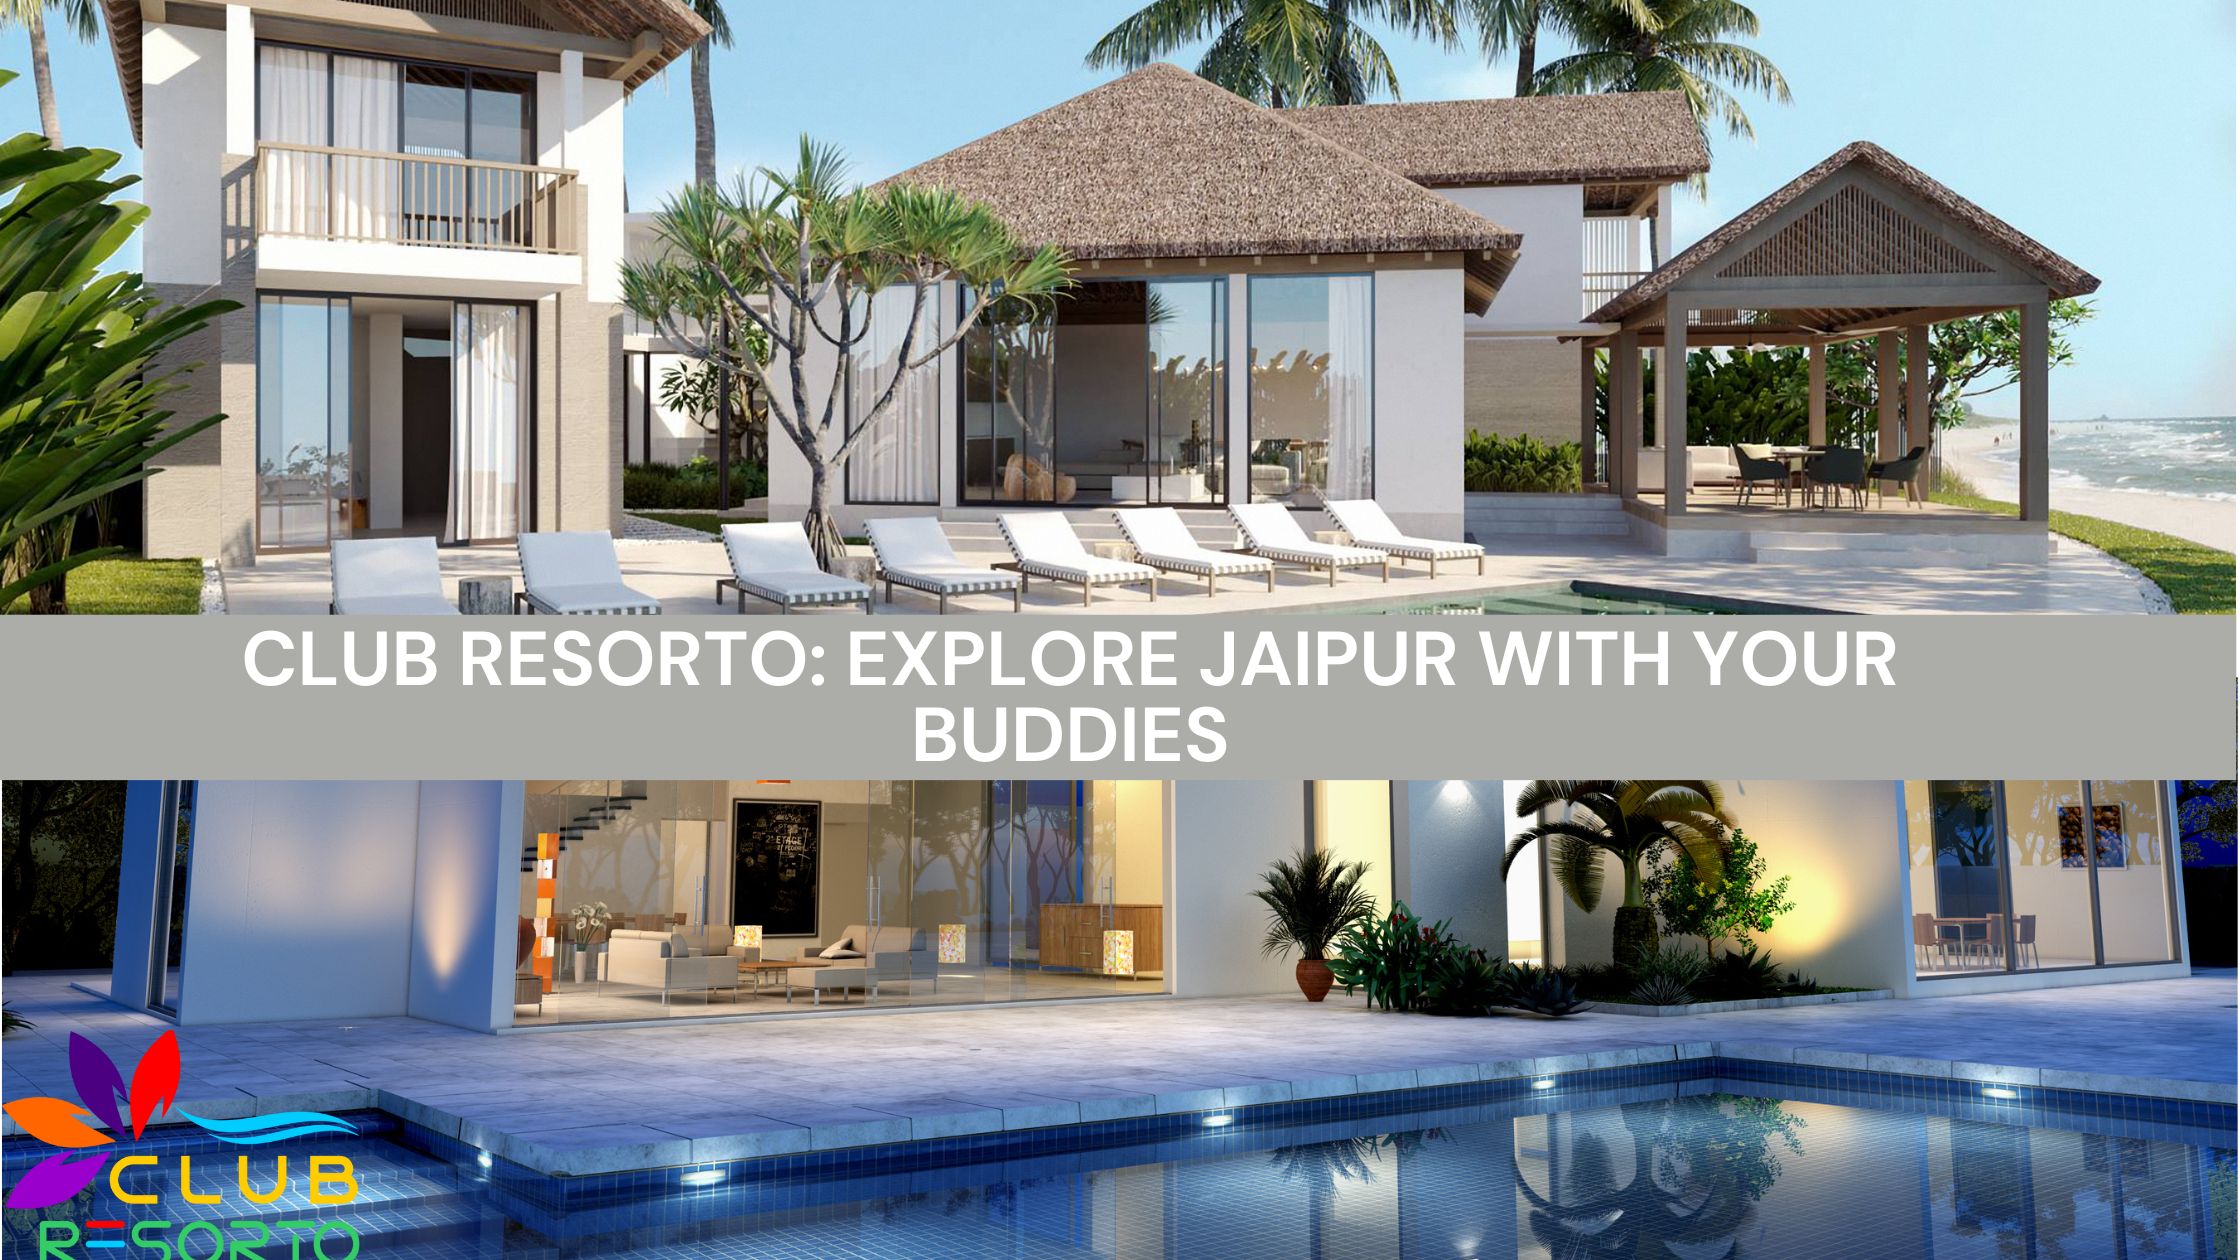 Club Resorto: Explore Jaipur with Your Buddies